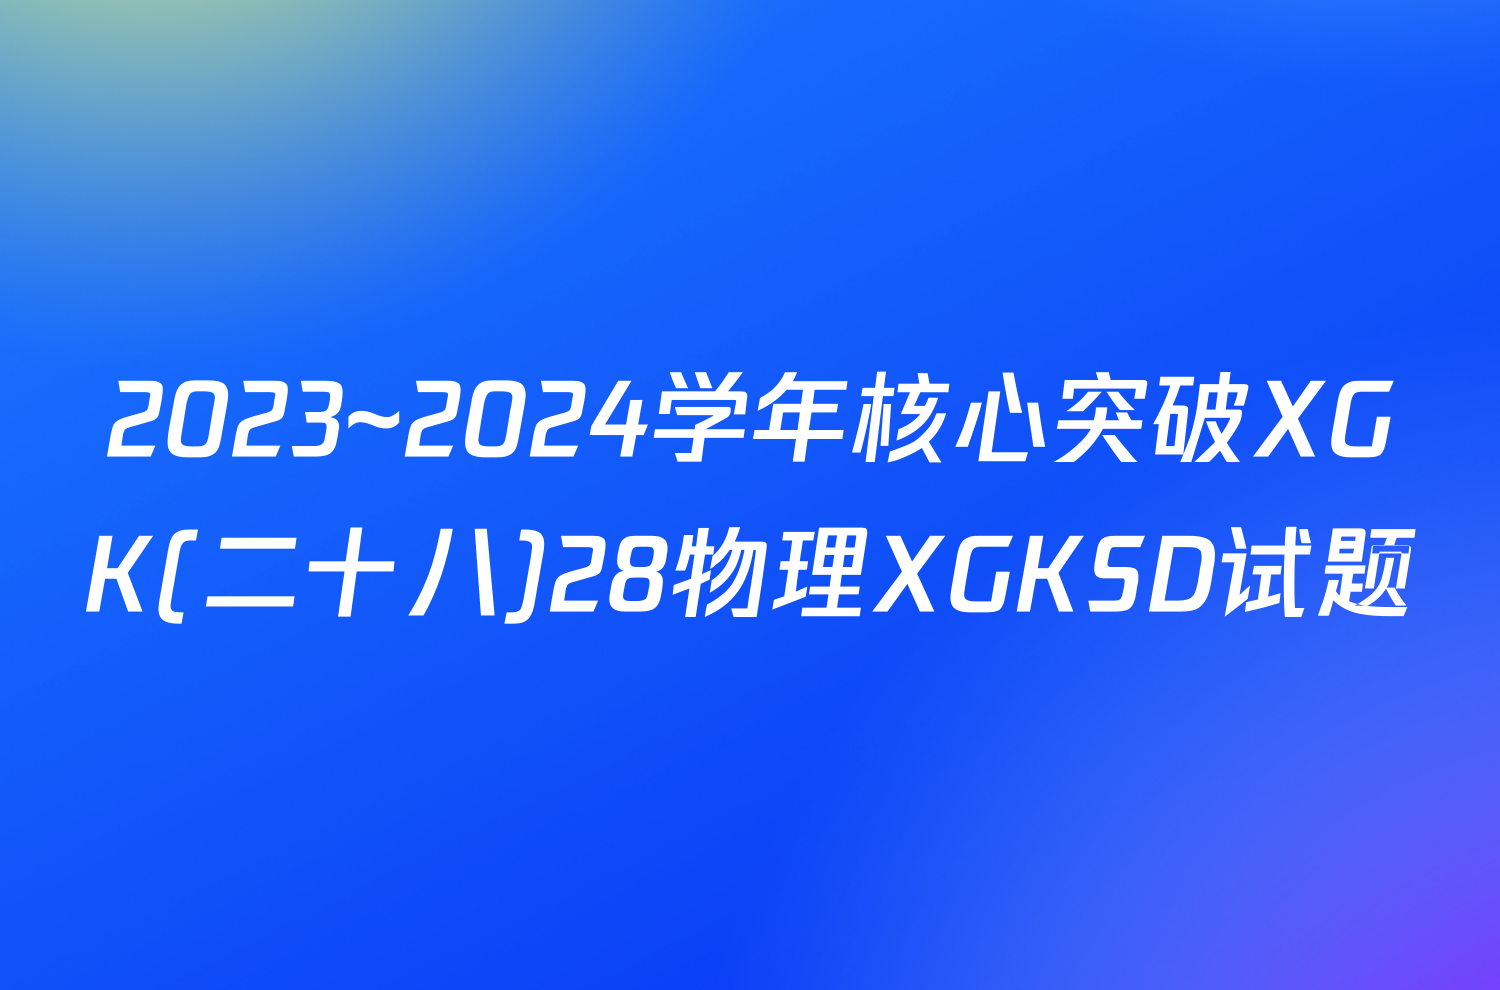 2023~2024学年核心突破XGK(二十八)28物理XGKSD试题